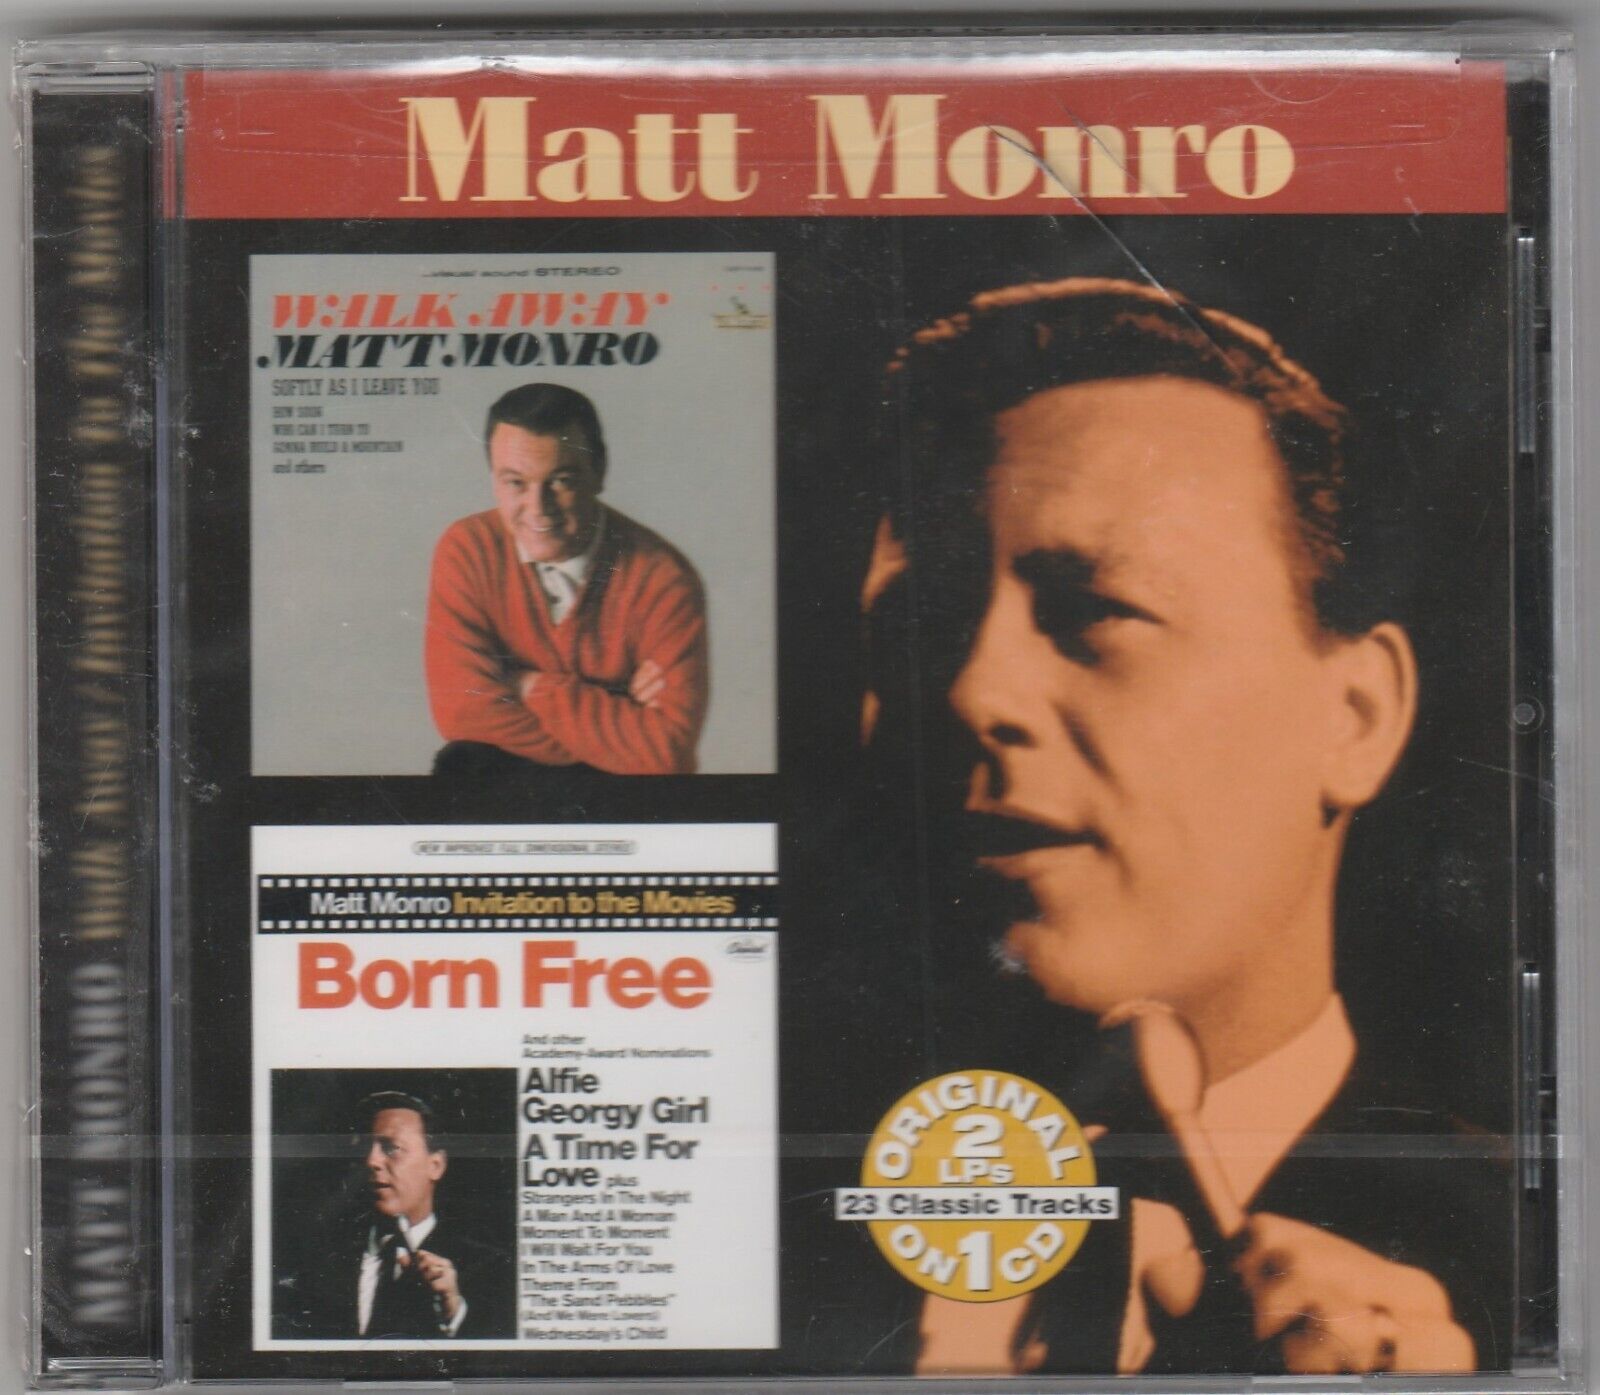 MATT MONRO - Walk Away / Invitation To The Movies - CD BRAND NEW & SEALED